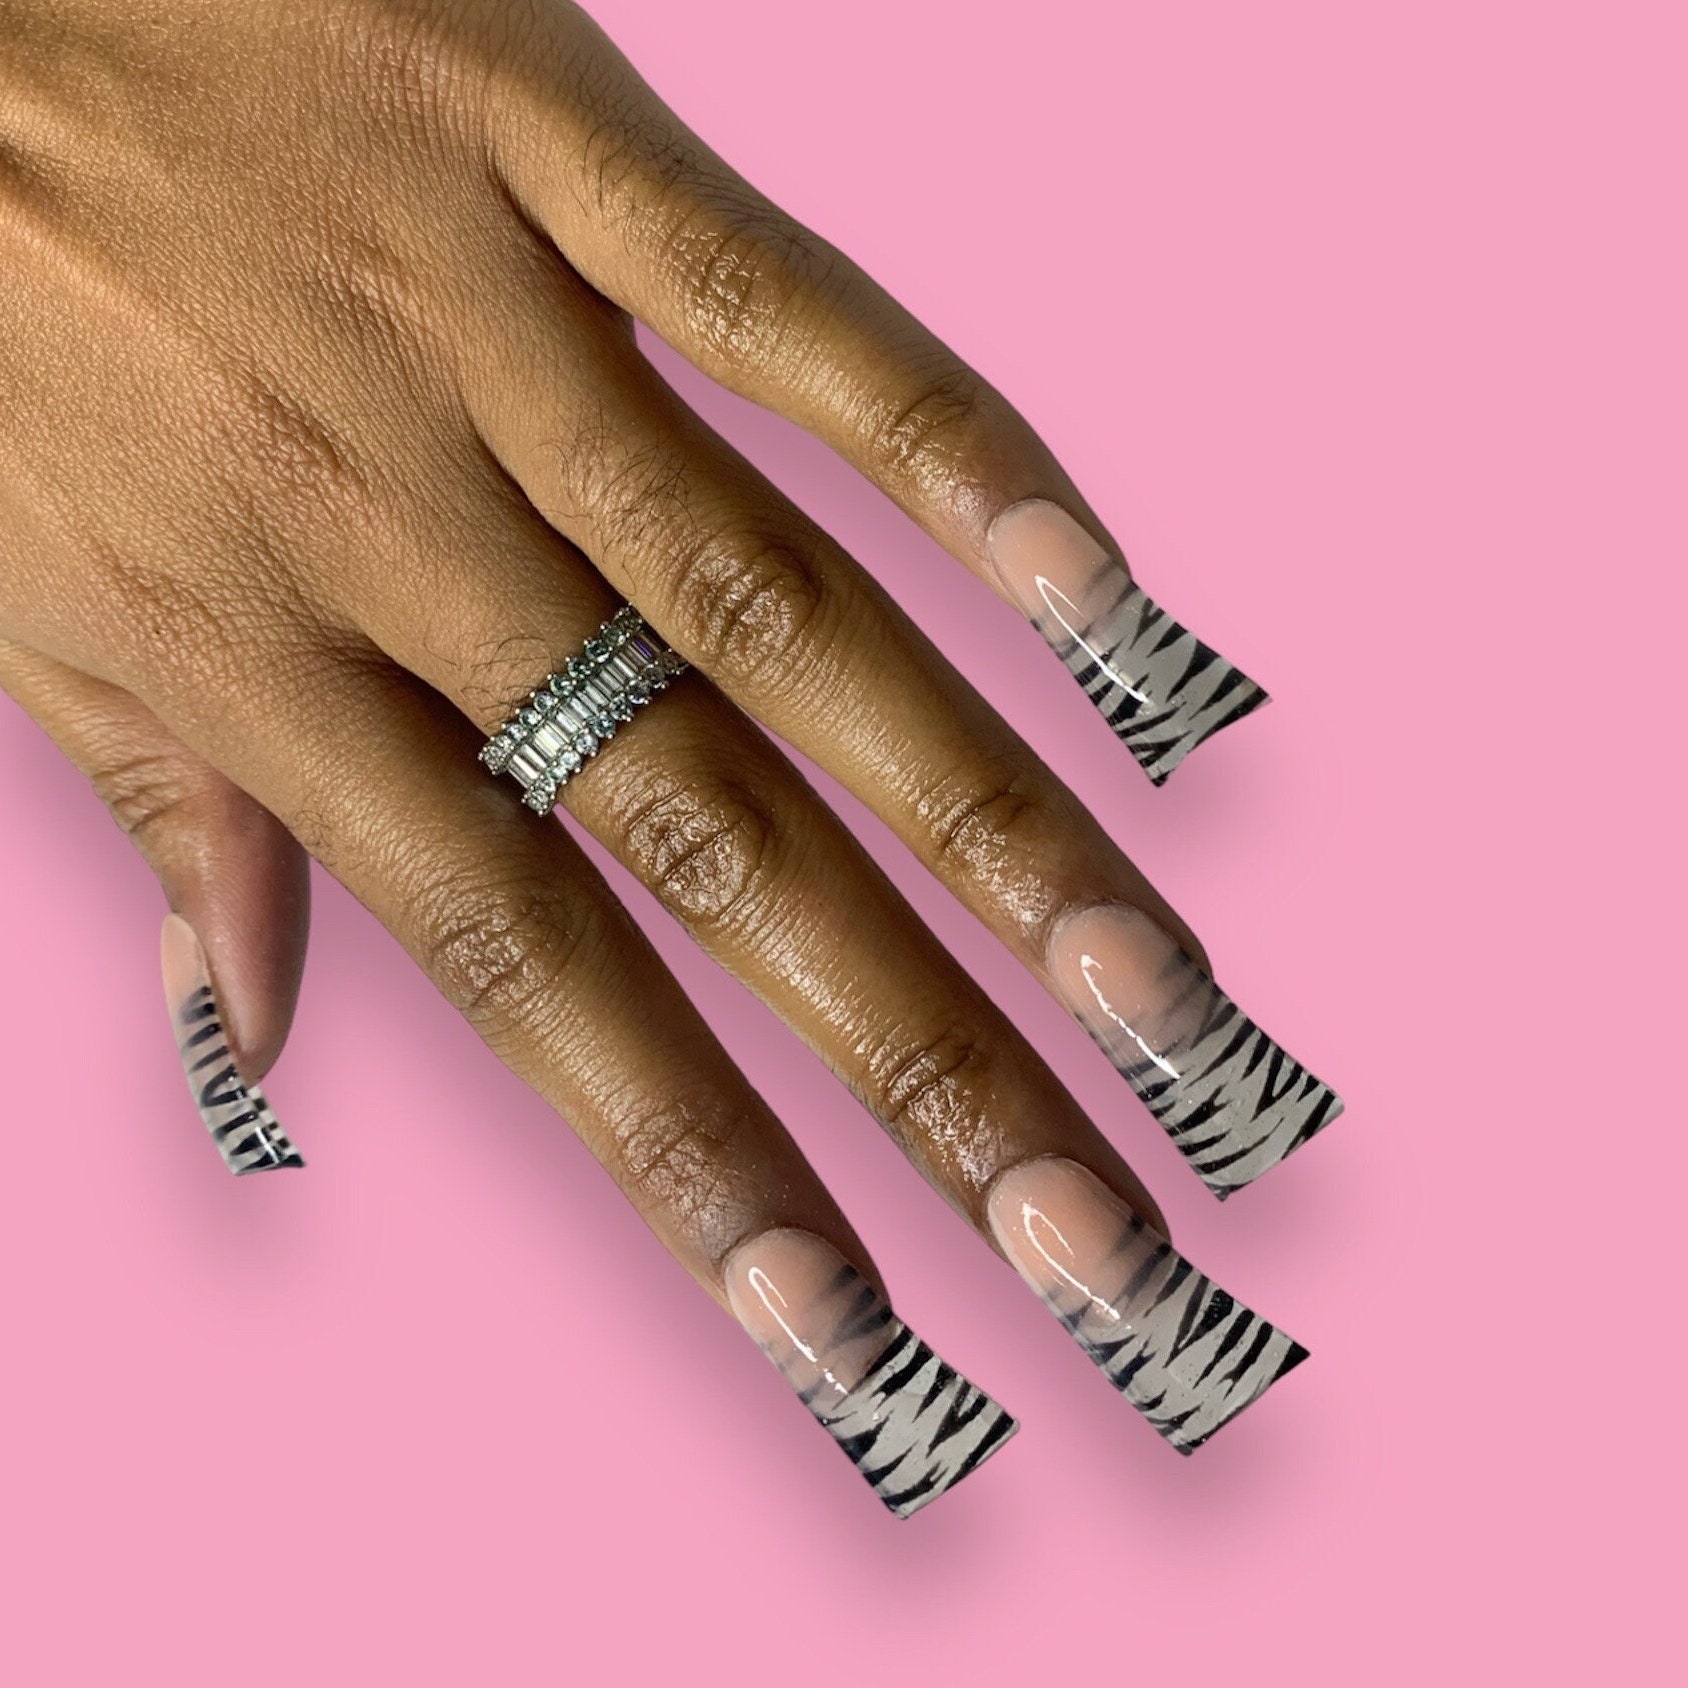 Press Nails Medium Length Fake Nails Luxury Mandarin Duck Checkerboard  Lattice Pink Bow Diy Acrylic Adhesive Tape Nails Women And Girls Nail  Supplies